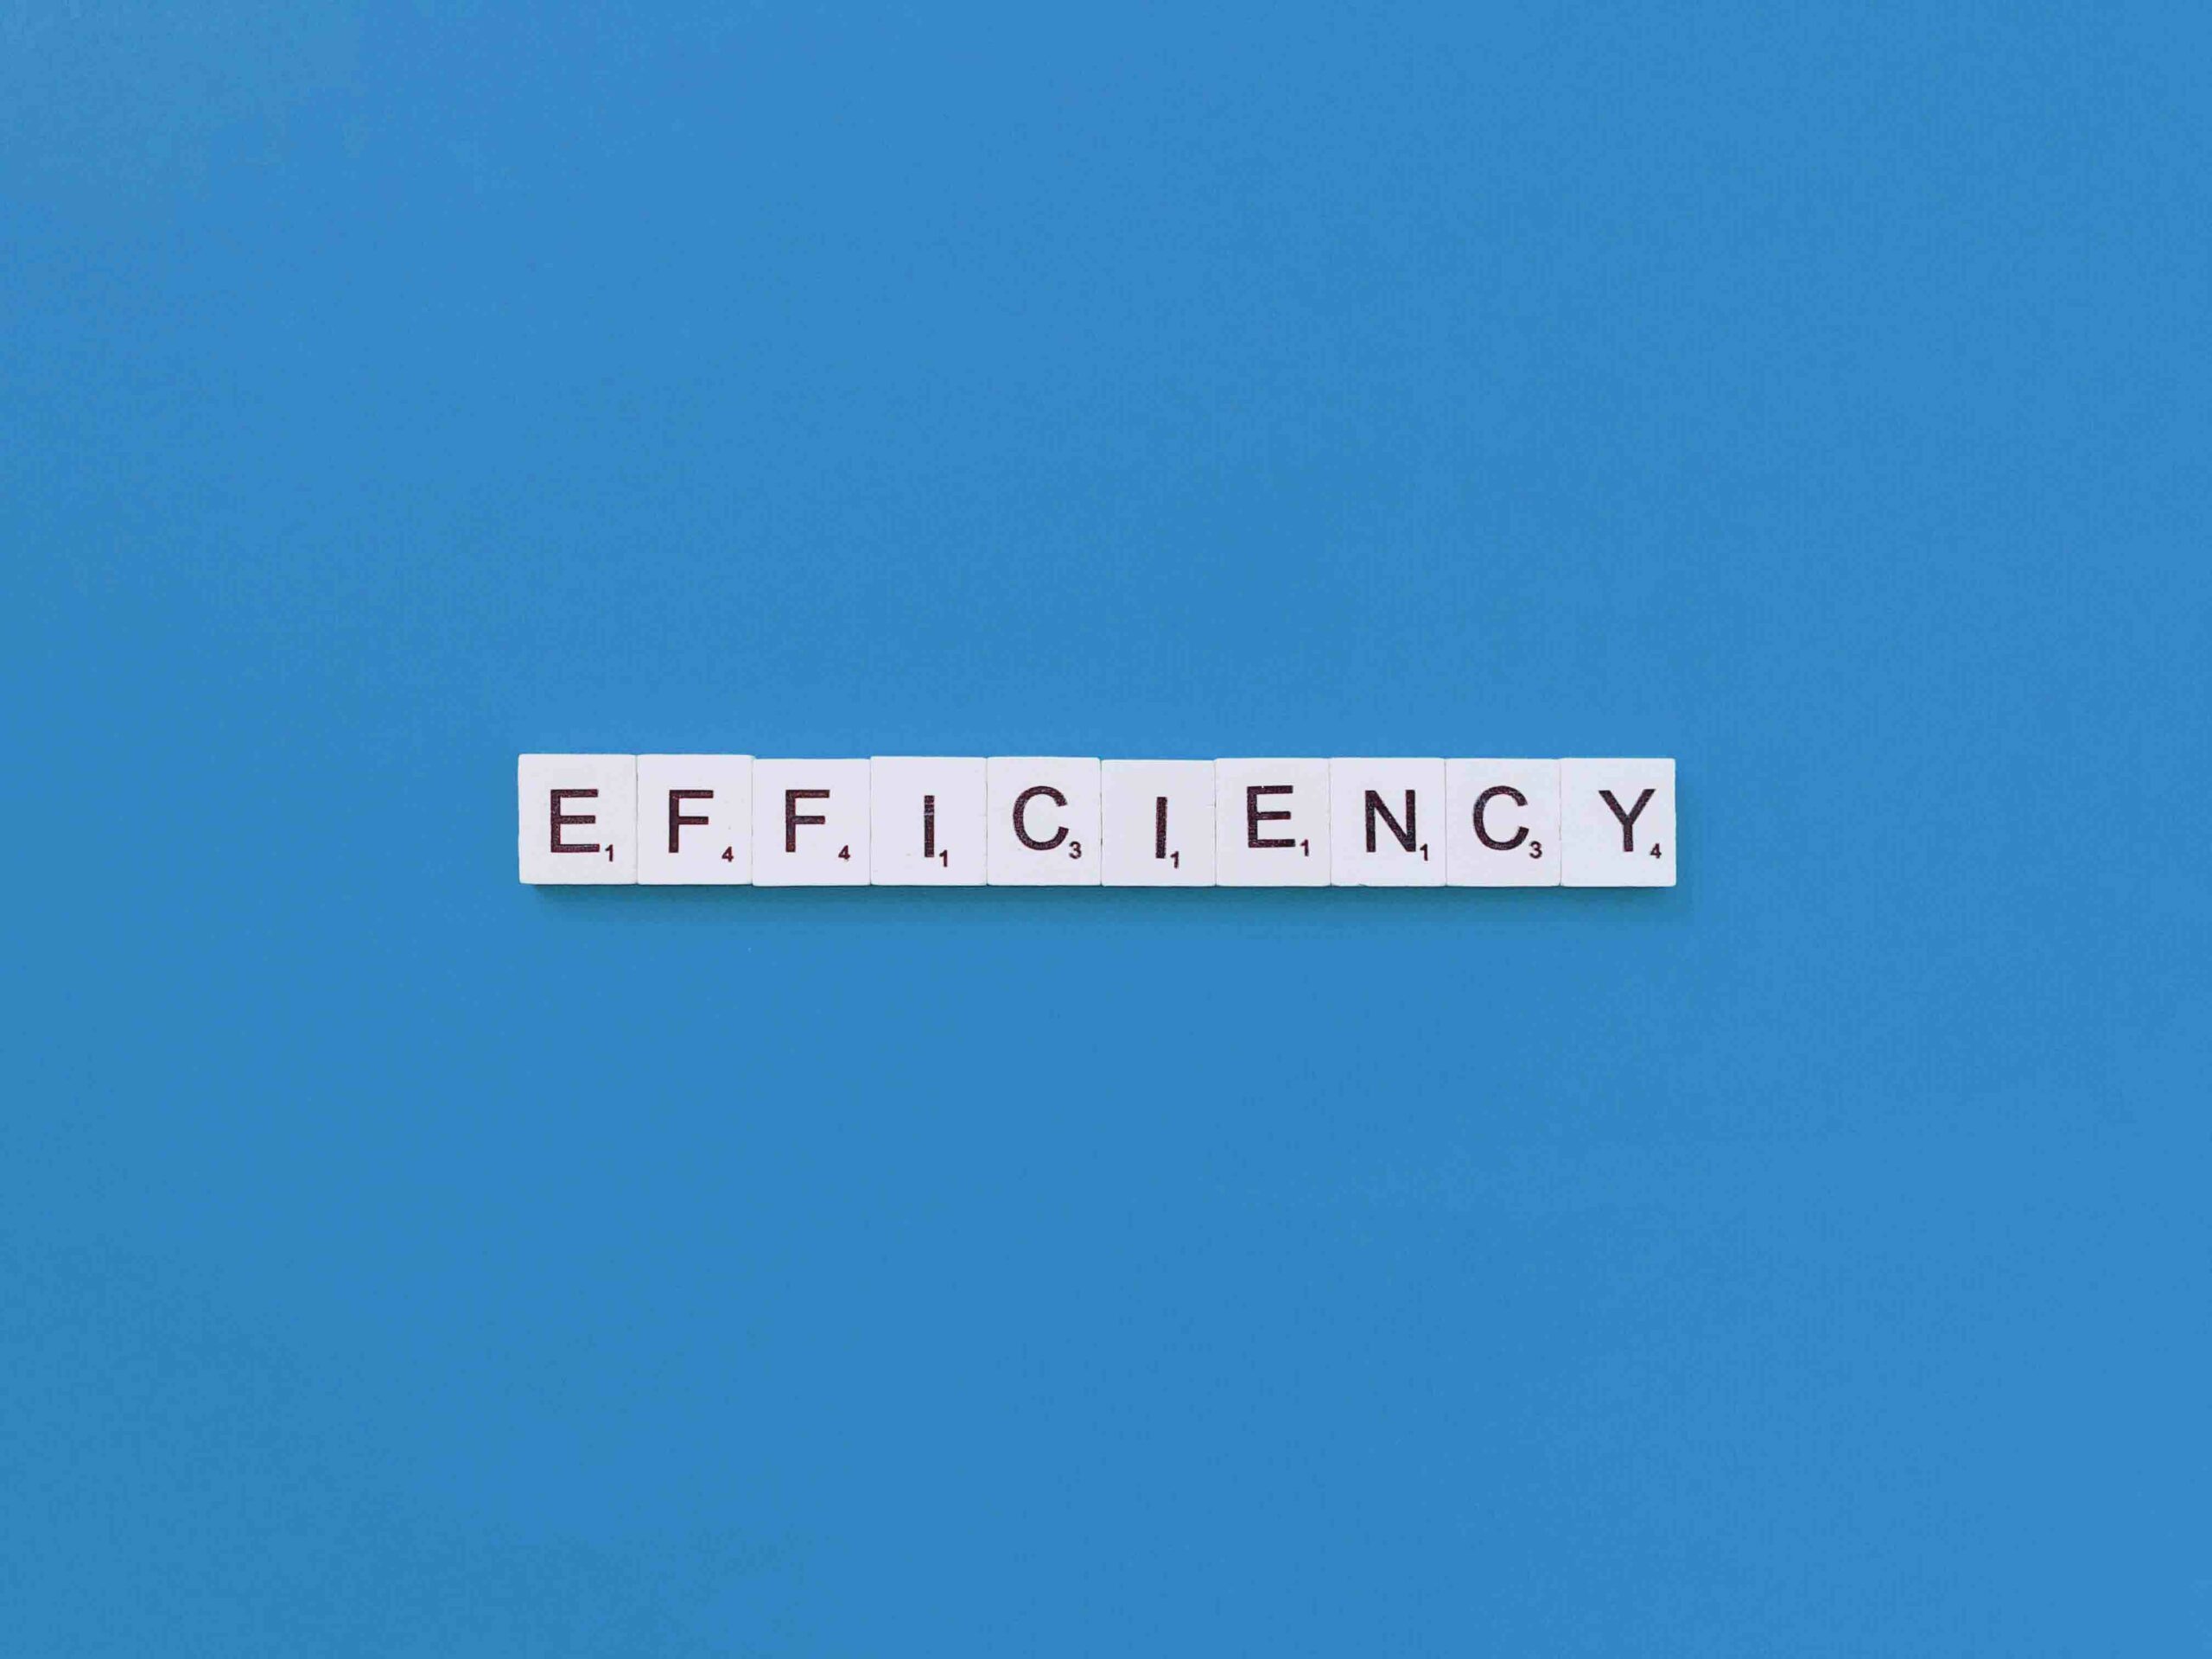 the word efficiency